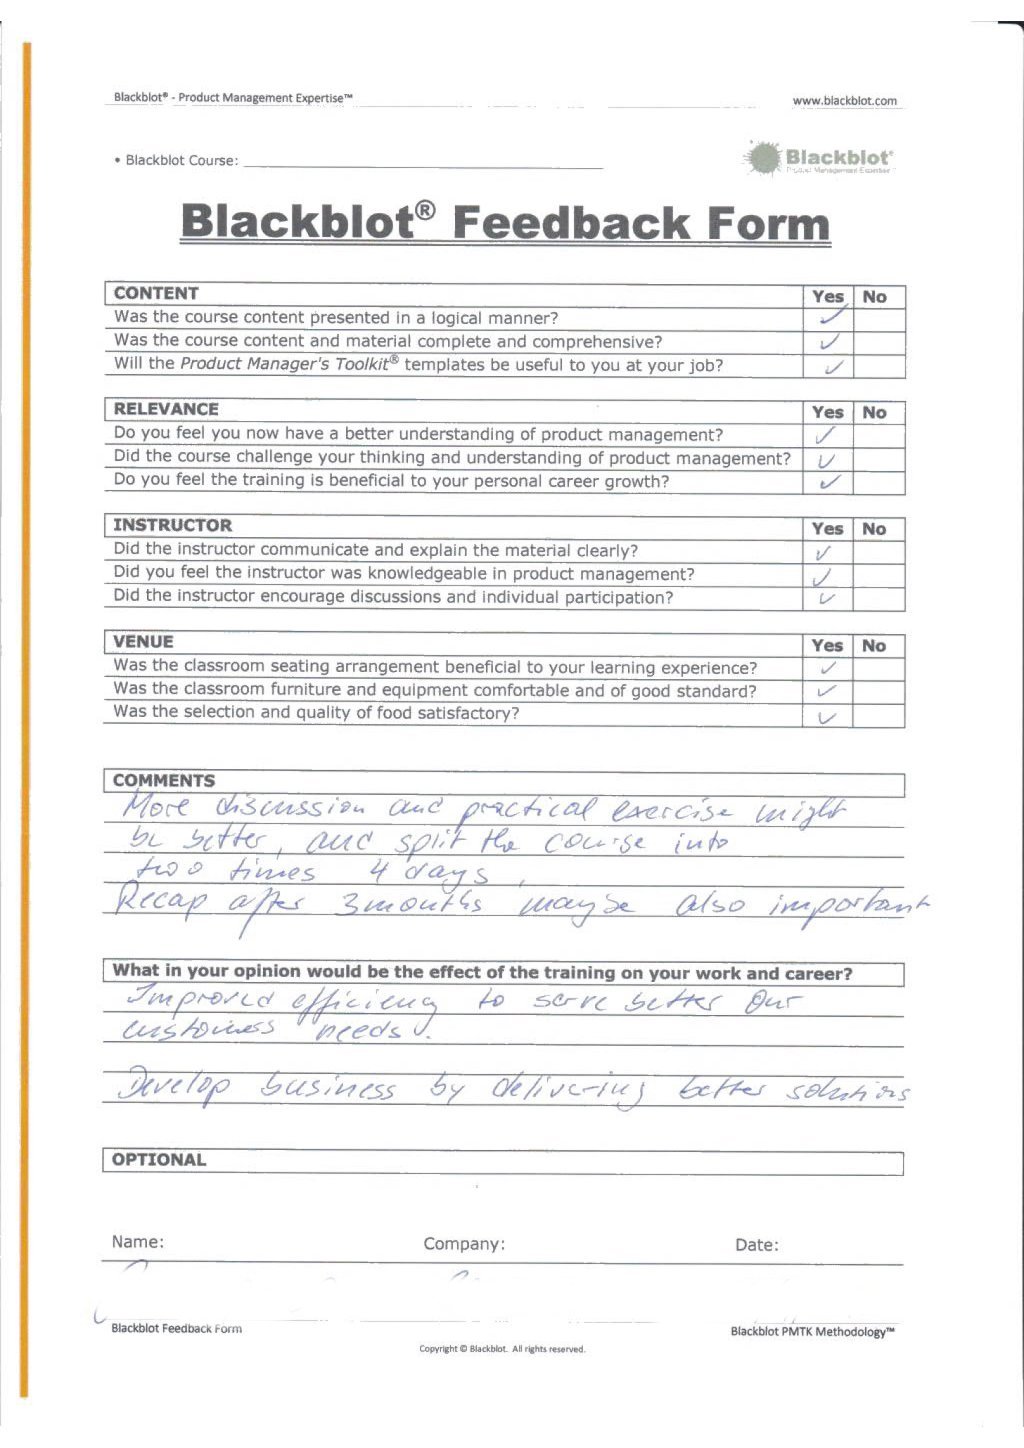 Blackblot: Blackblot_Strategic_Product_Management_Feedback_Form_026.jpg